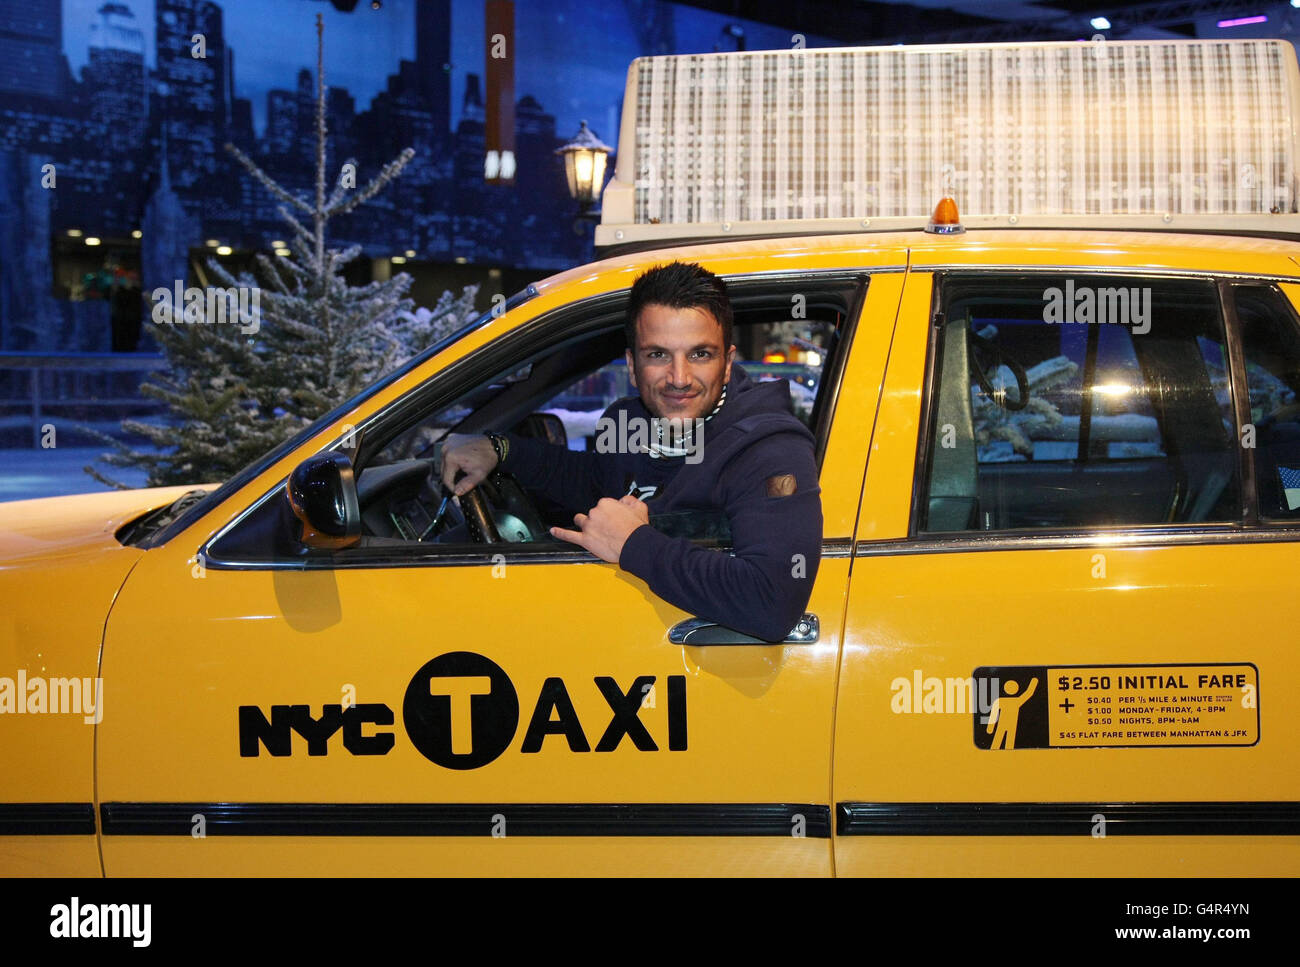 Il cantante Peter Andre si pone in un taxi in stile New York durante il lancio di Natale a New York a Glow, Bluewater in Kent, che è aperto da oggi fino all'8 gennaio 2012. Foto Stock